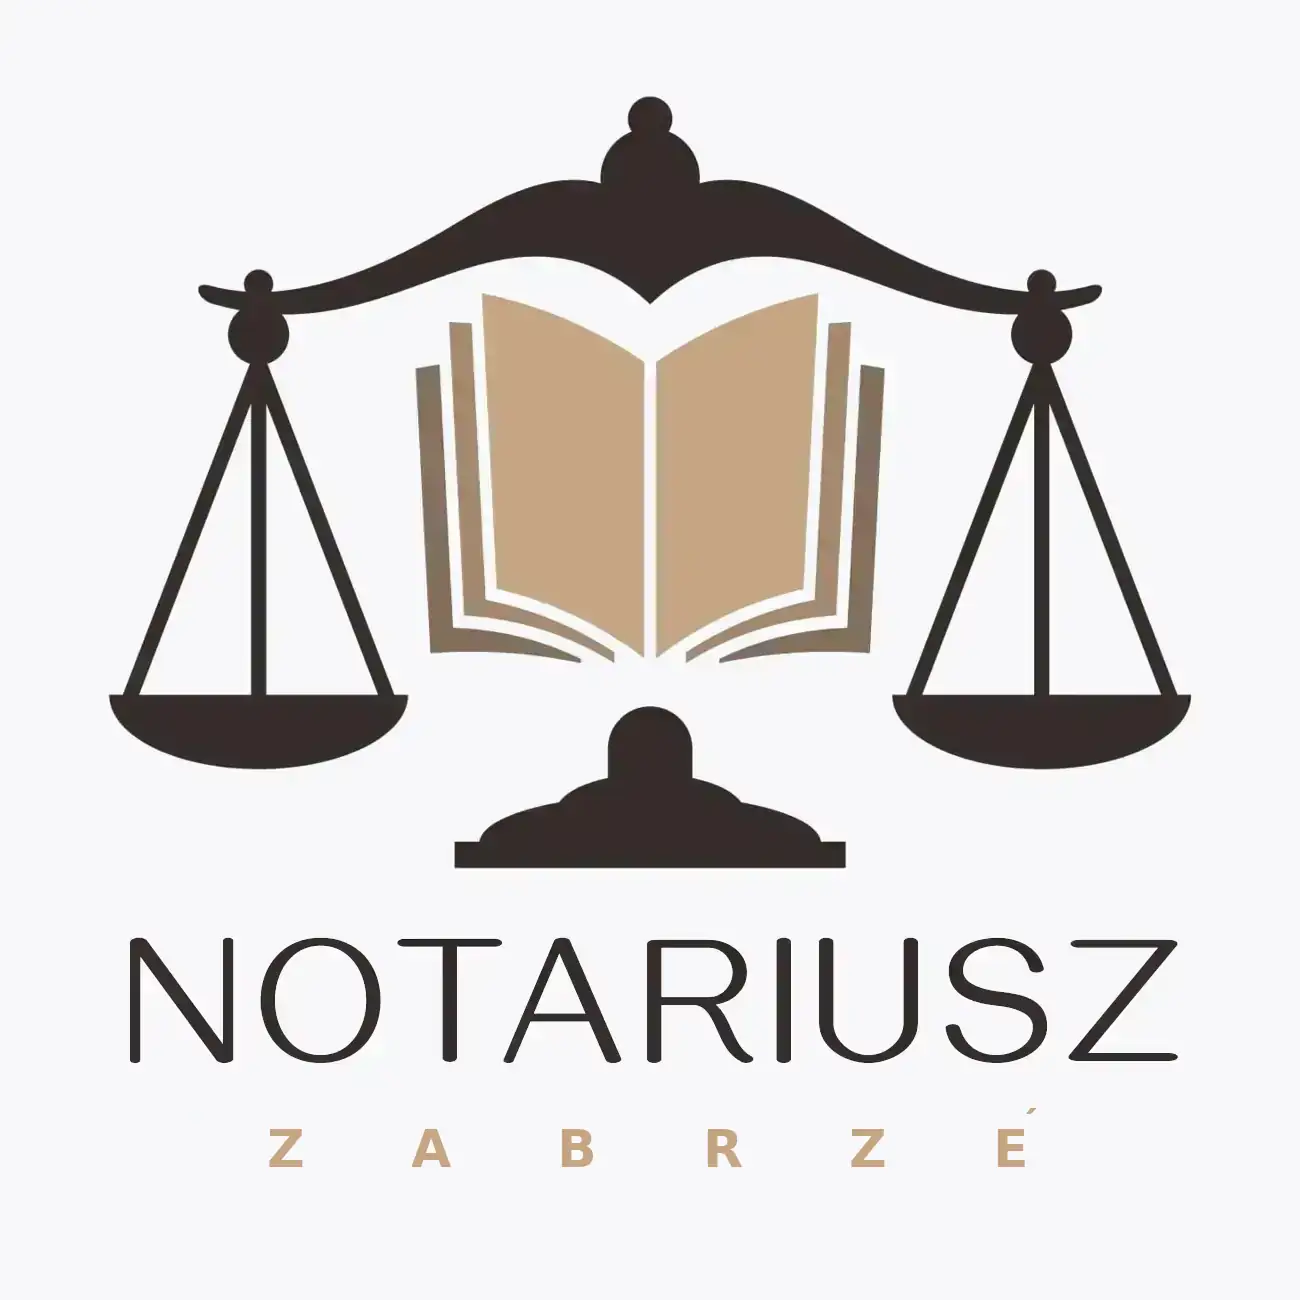 notariusz zabrze